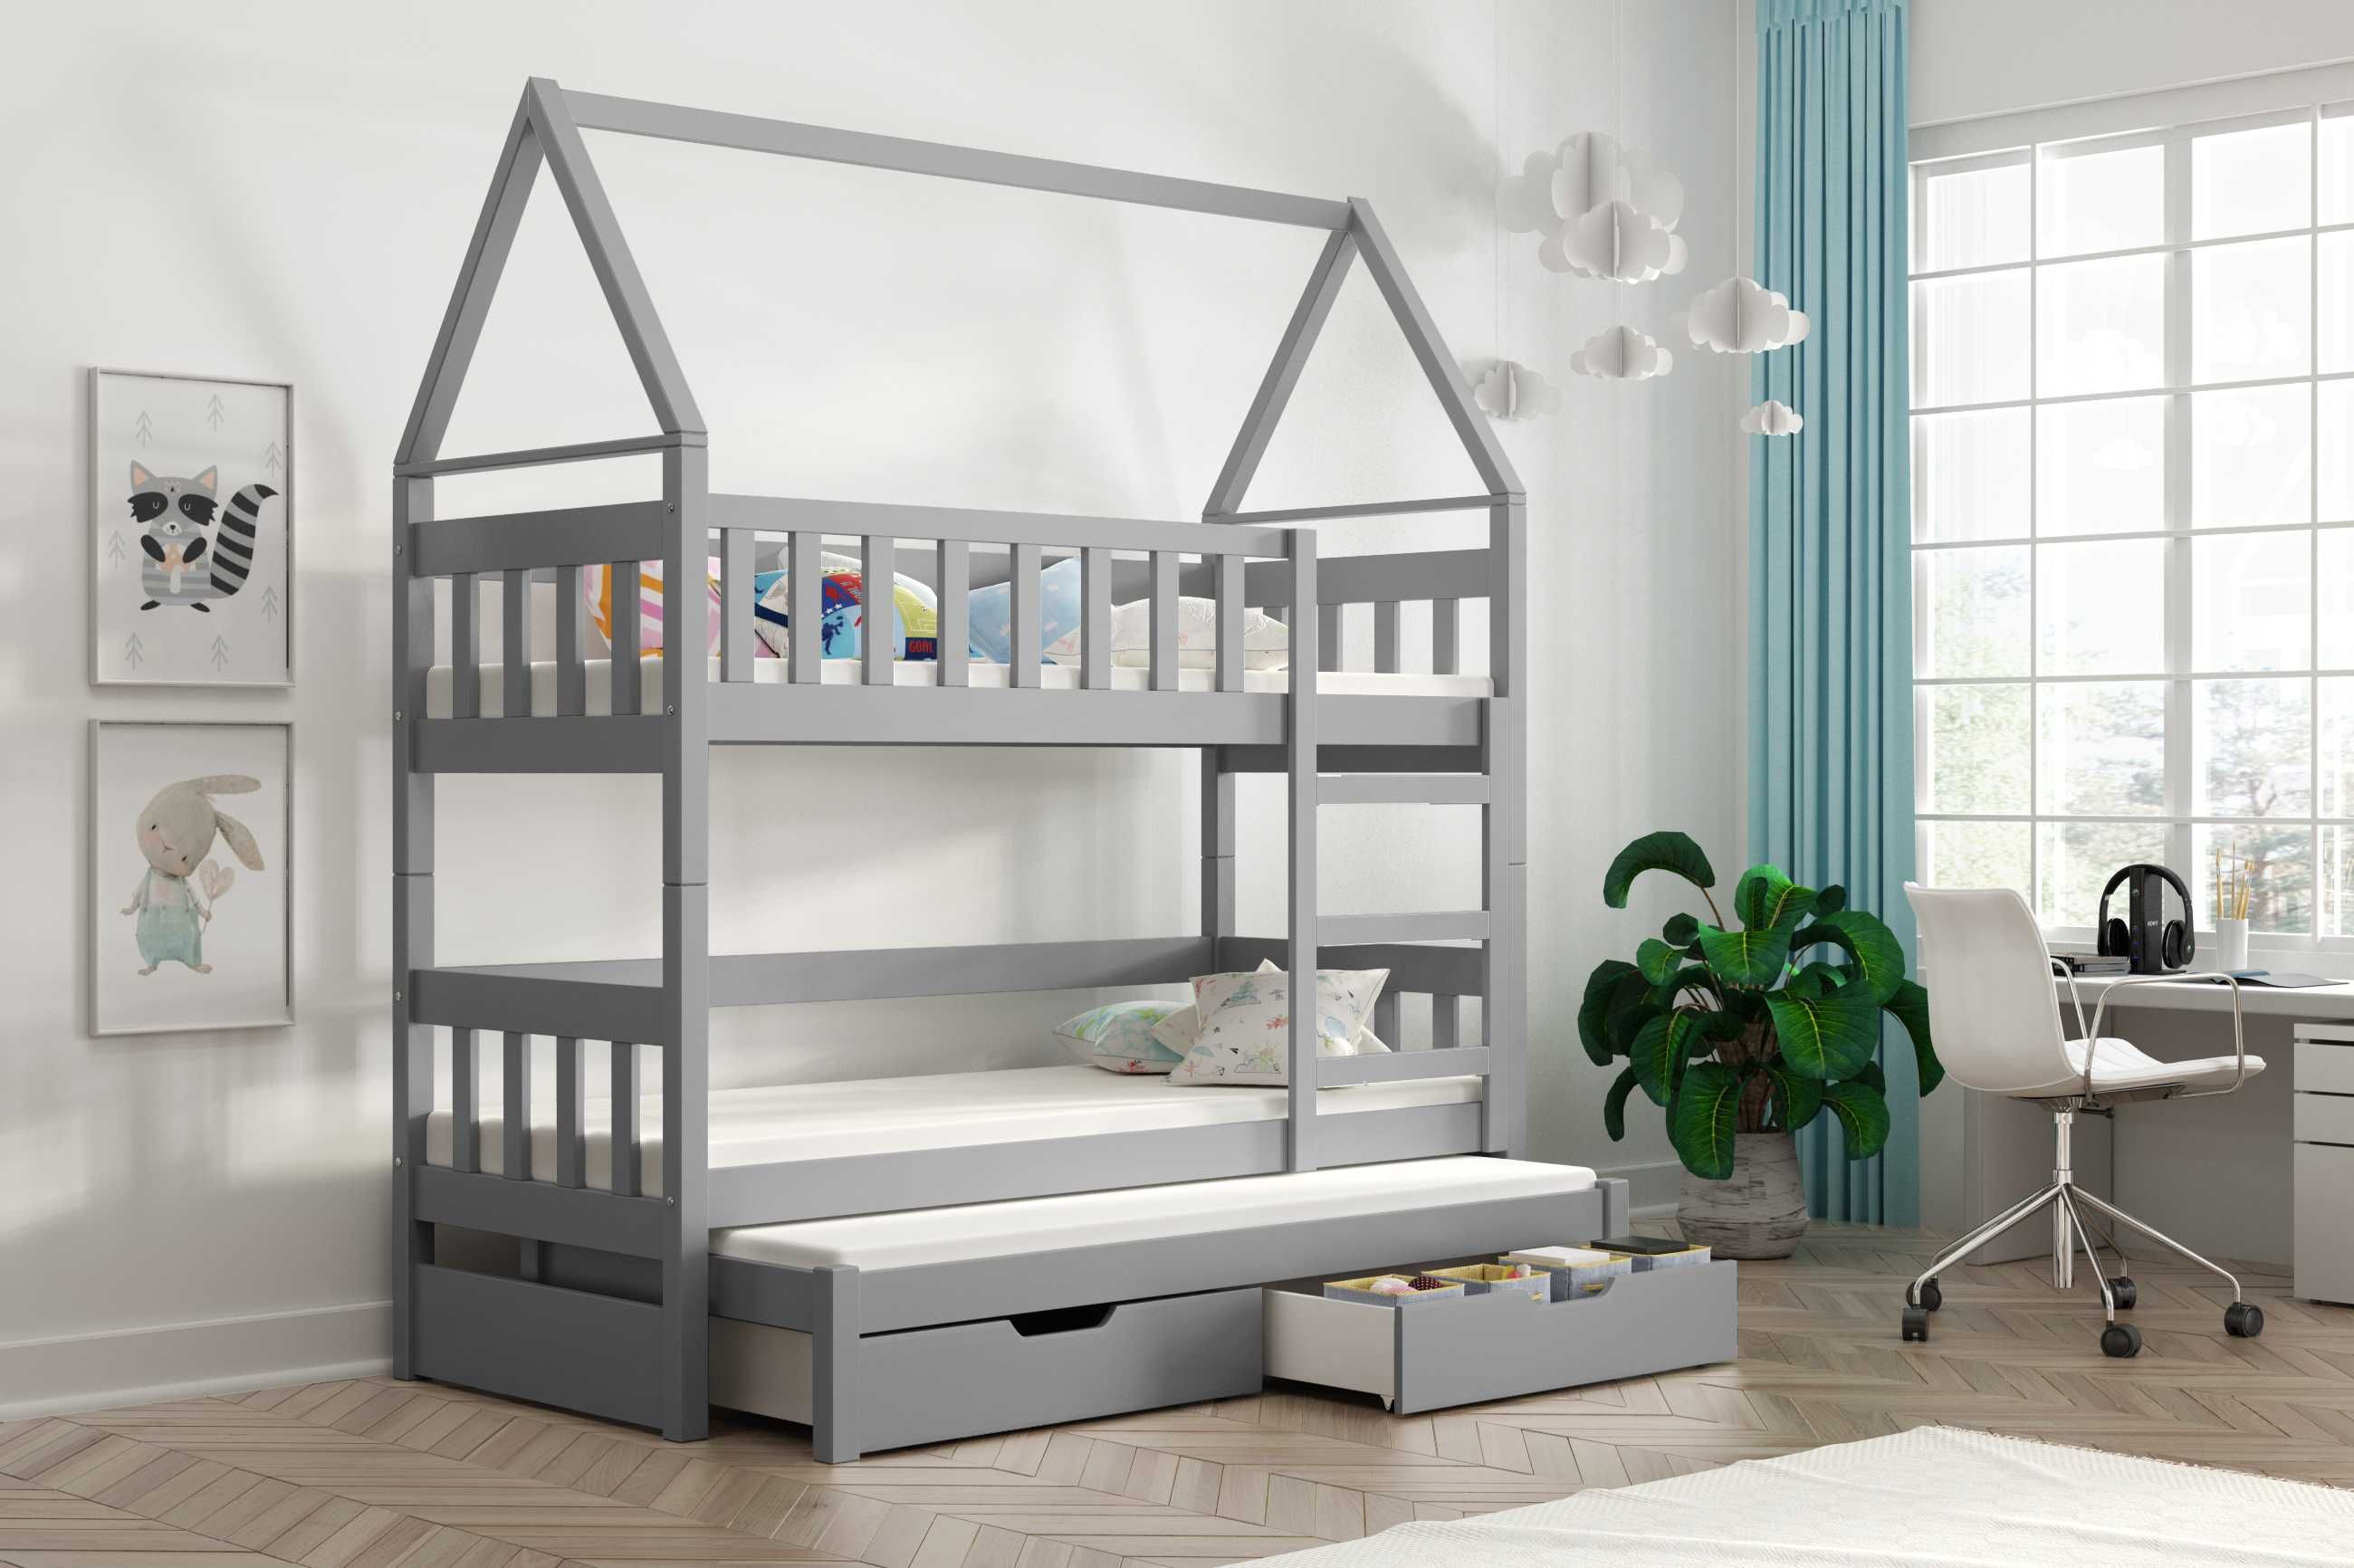 Trzyosobowe łóżko piętrowe dla dzieci OLA z drewna sosnowego HIT